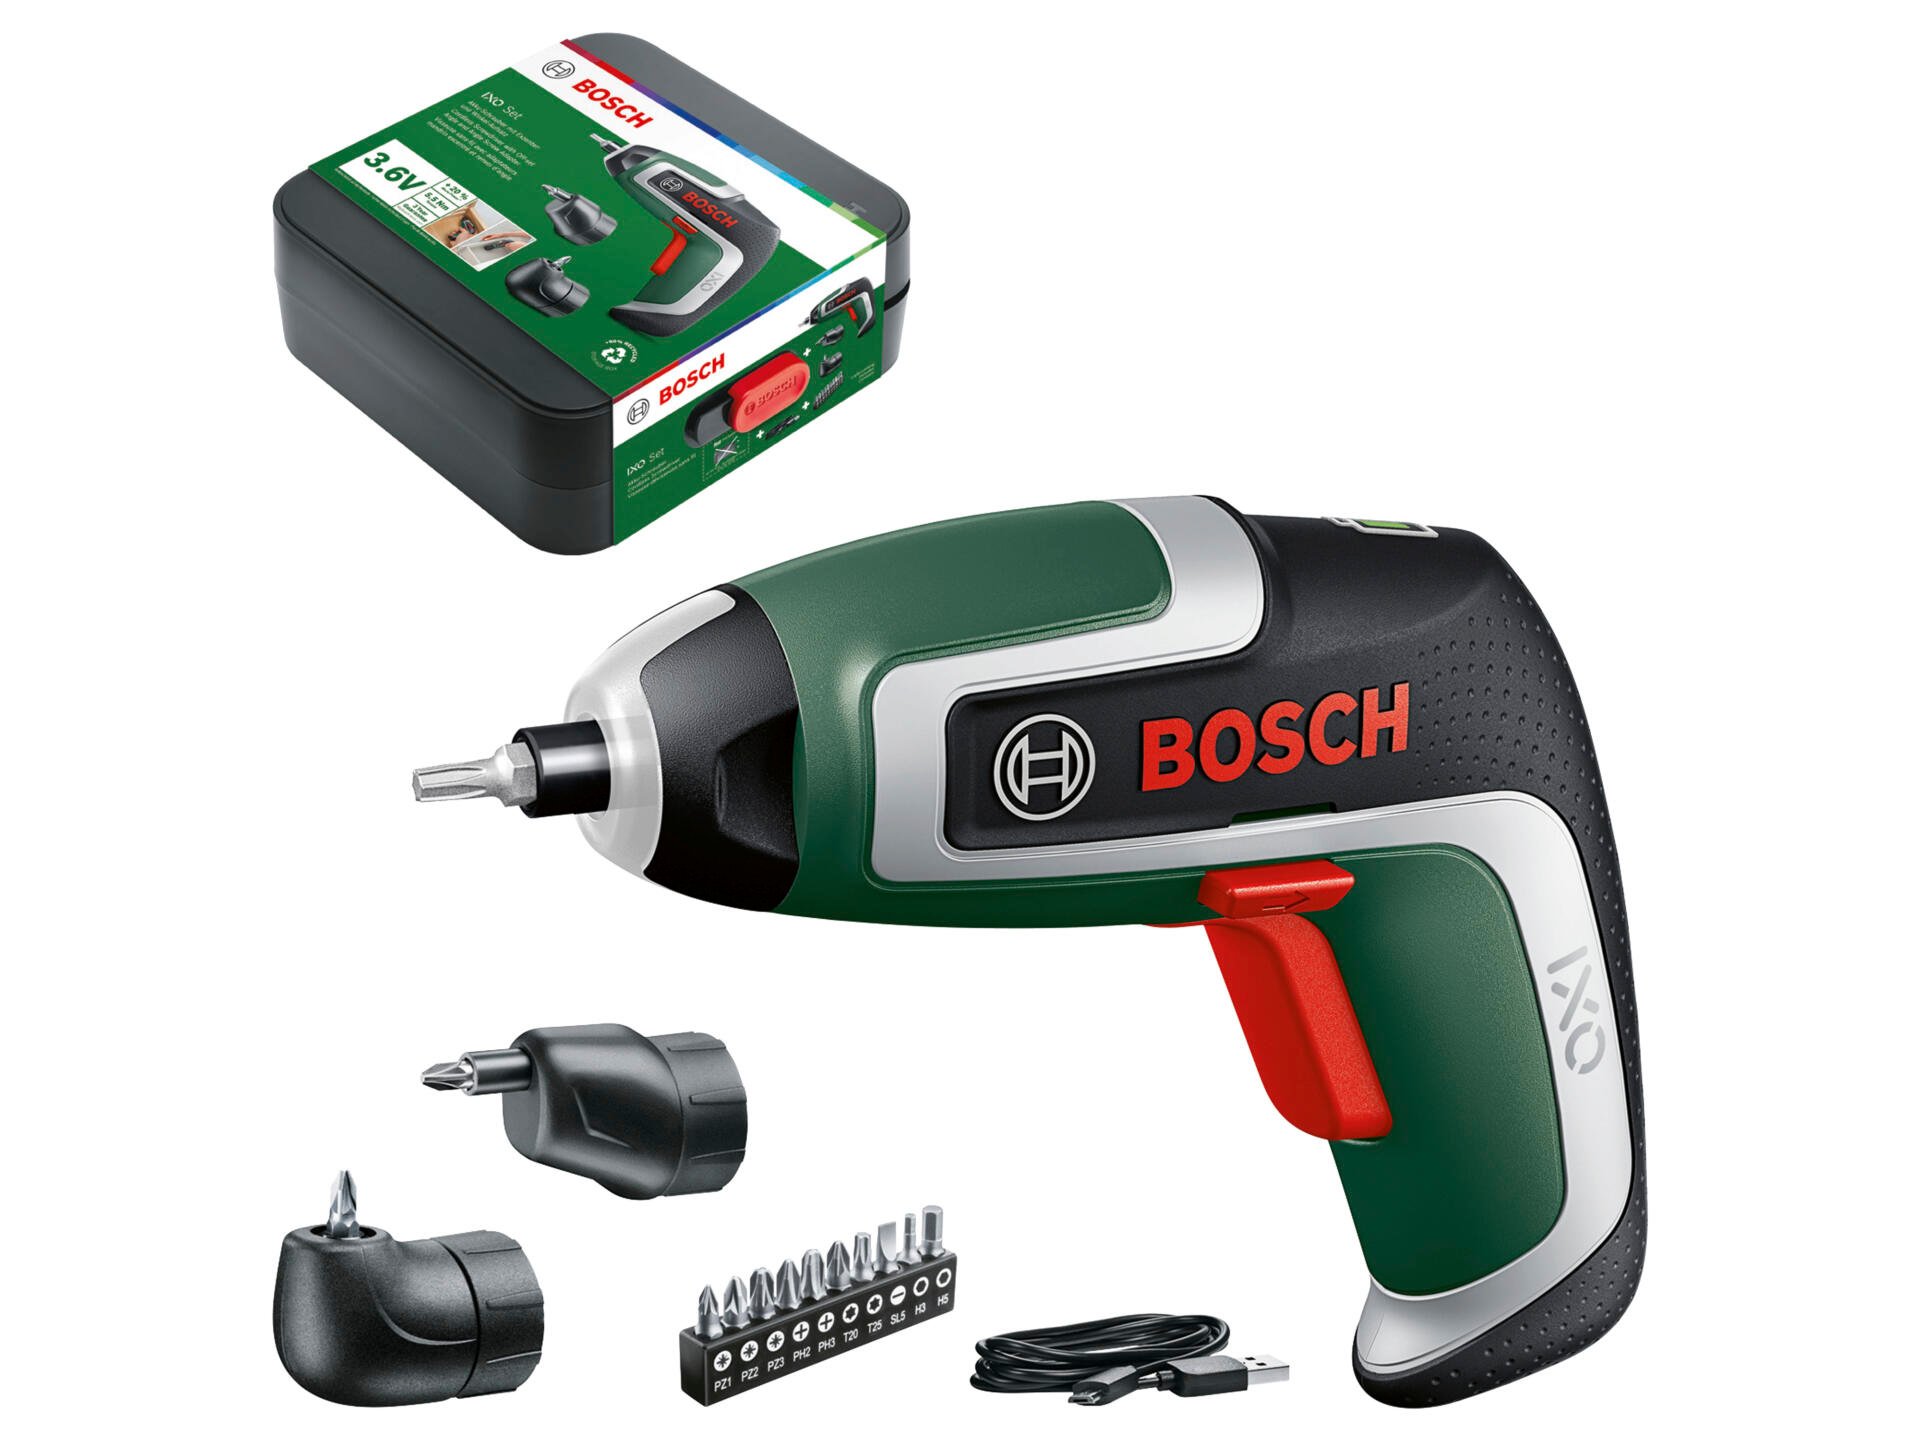 Bosch IXO 7 visseuse sans fil 3,6V + chargeur + accessoires